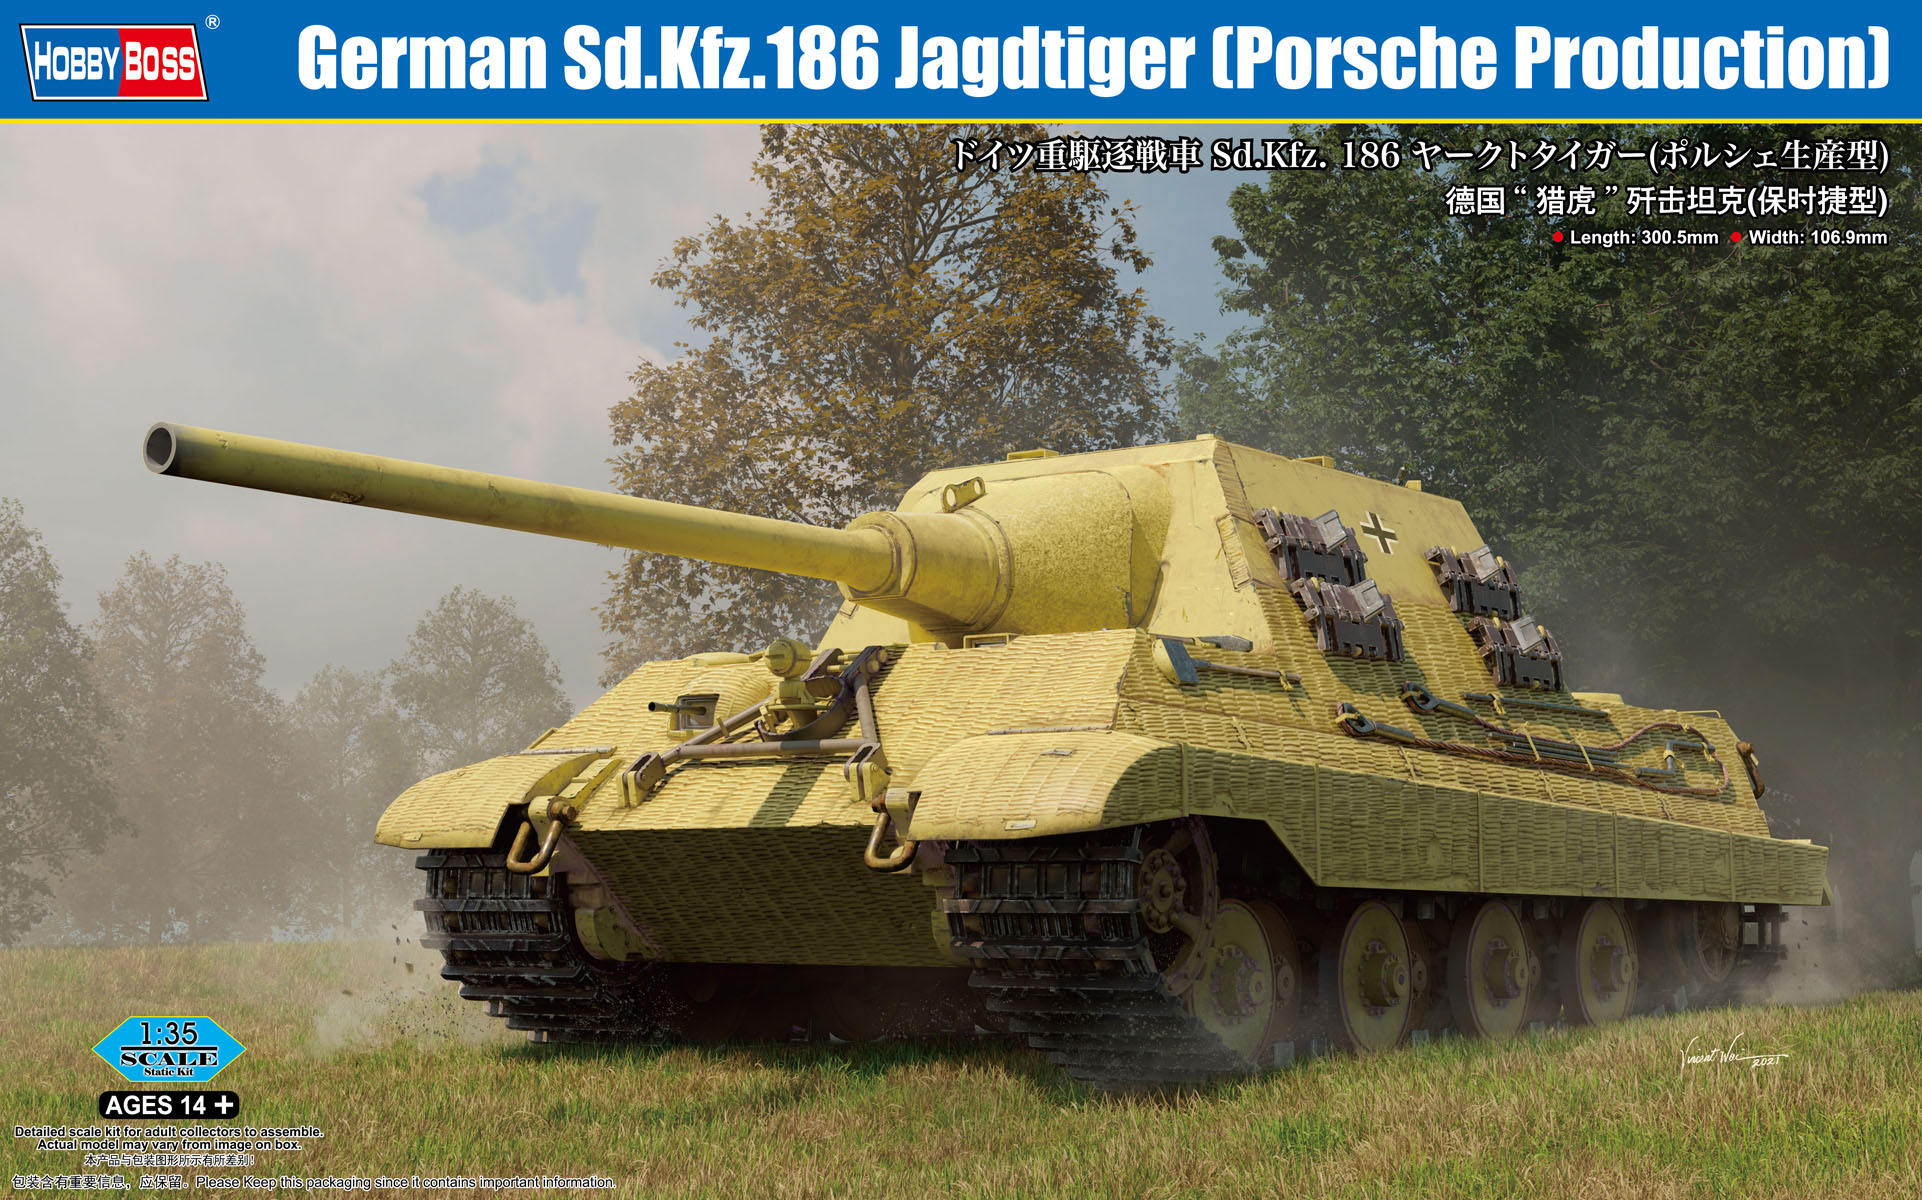 1/35 ドイツ重駆逐戦車 Sd.Kfz.186 ヤークトタイガー(ポルシェ生産型